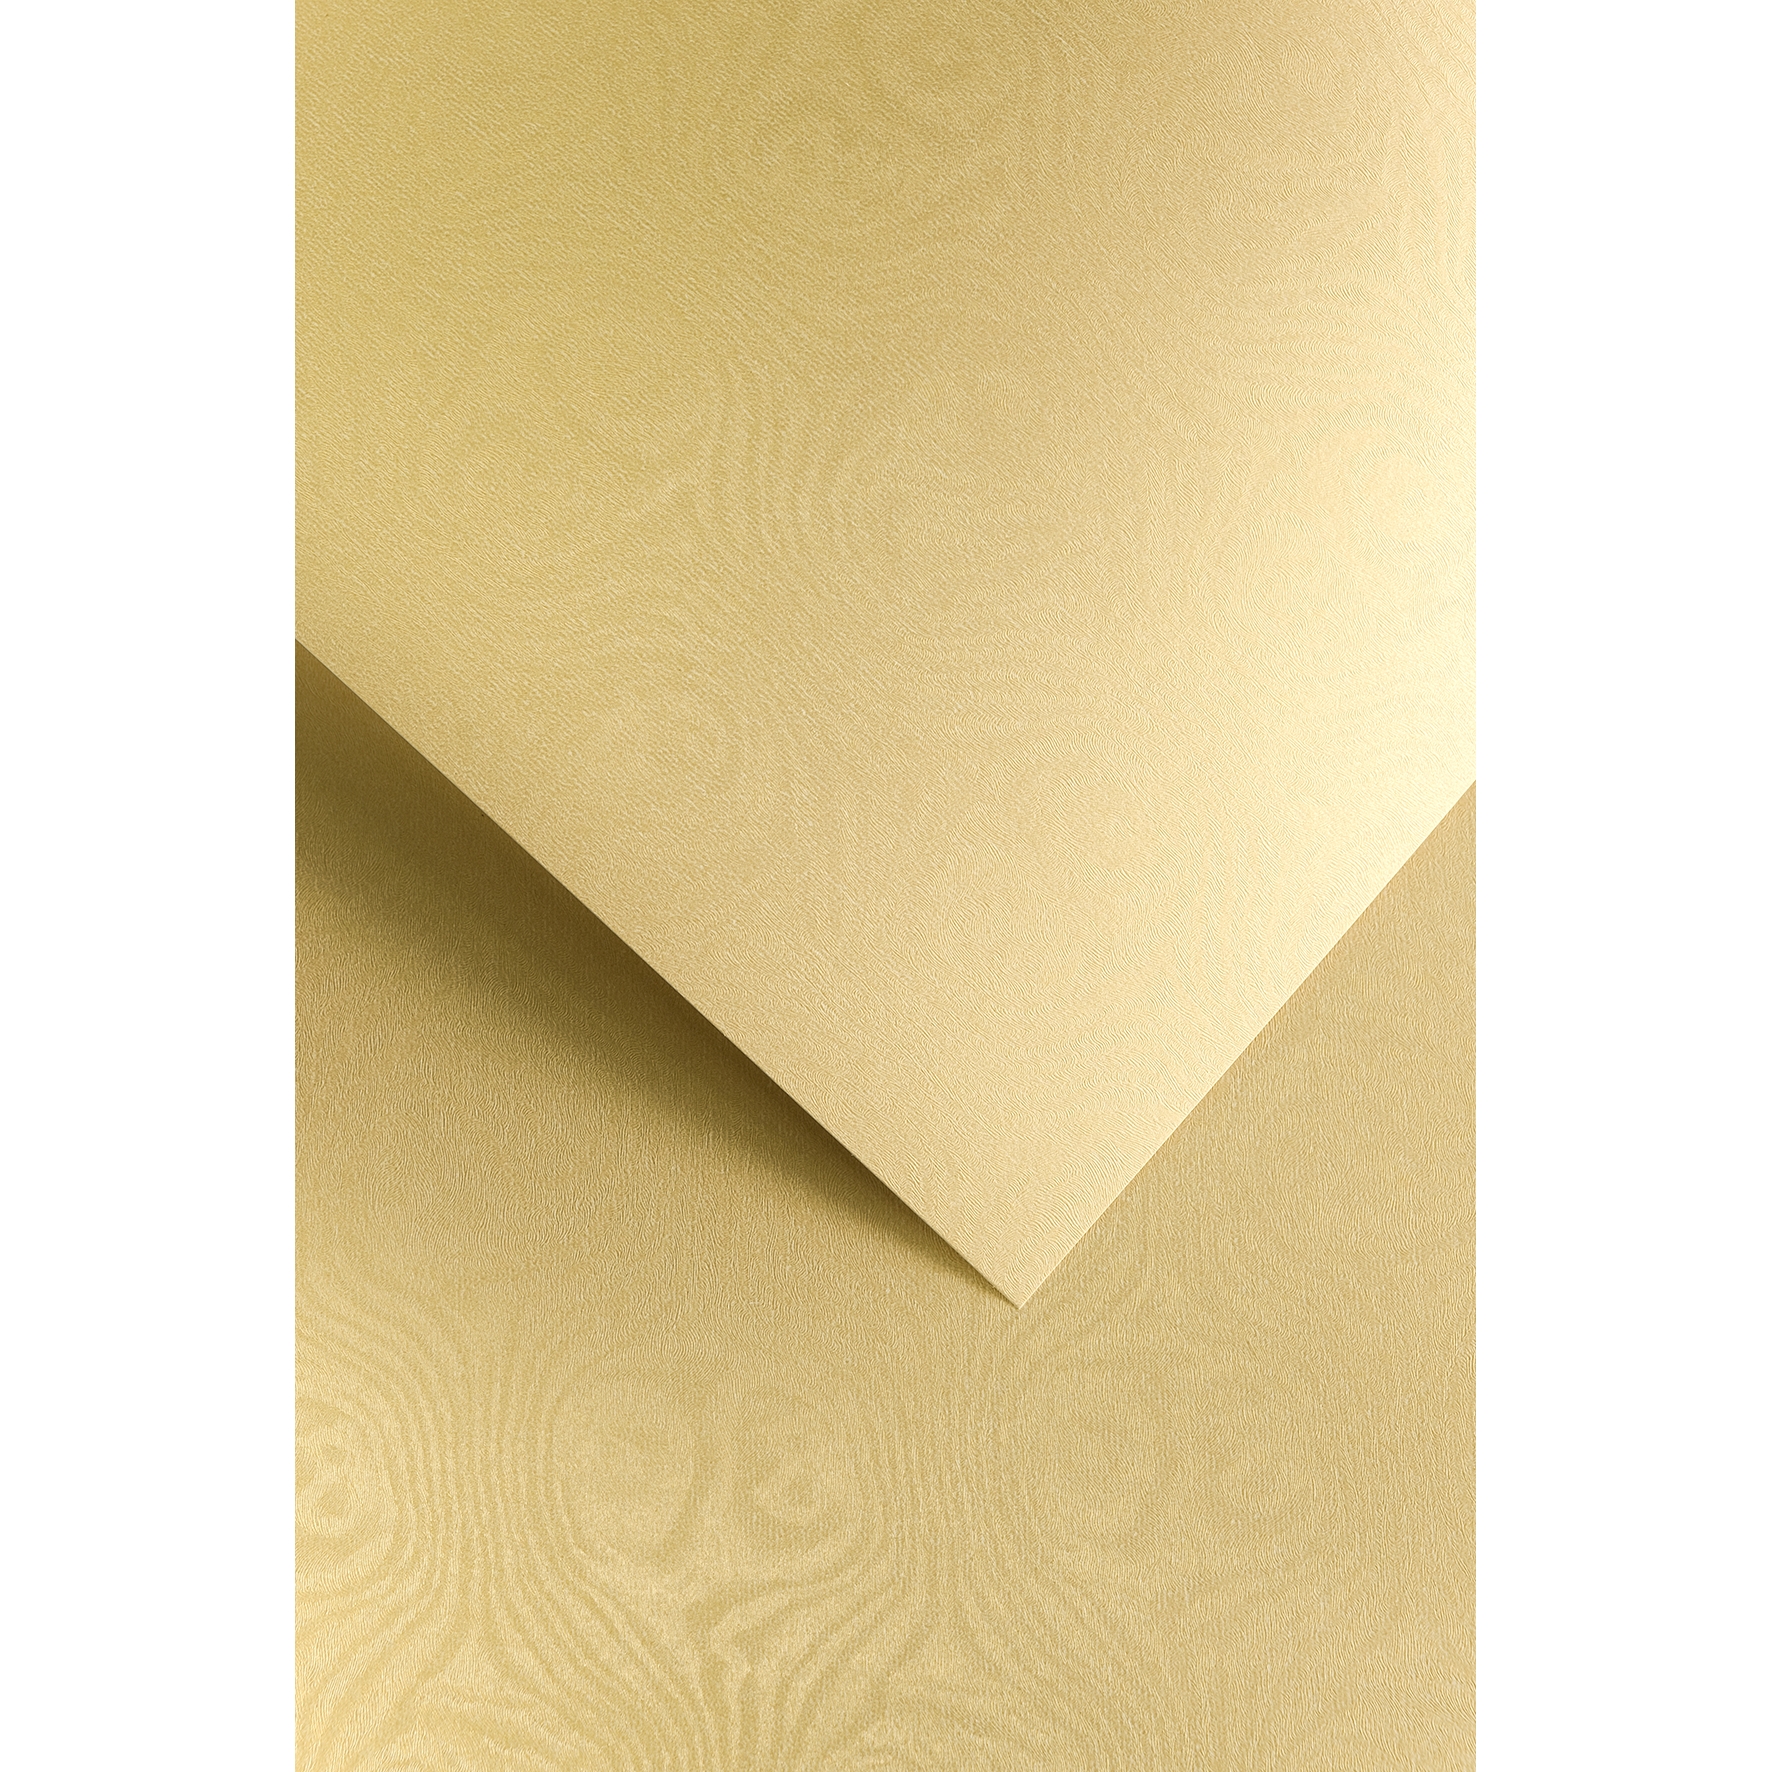 Ozdobný papír Royal, zlatý, 250g, 20ks